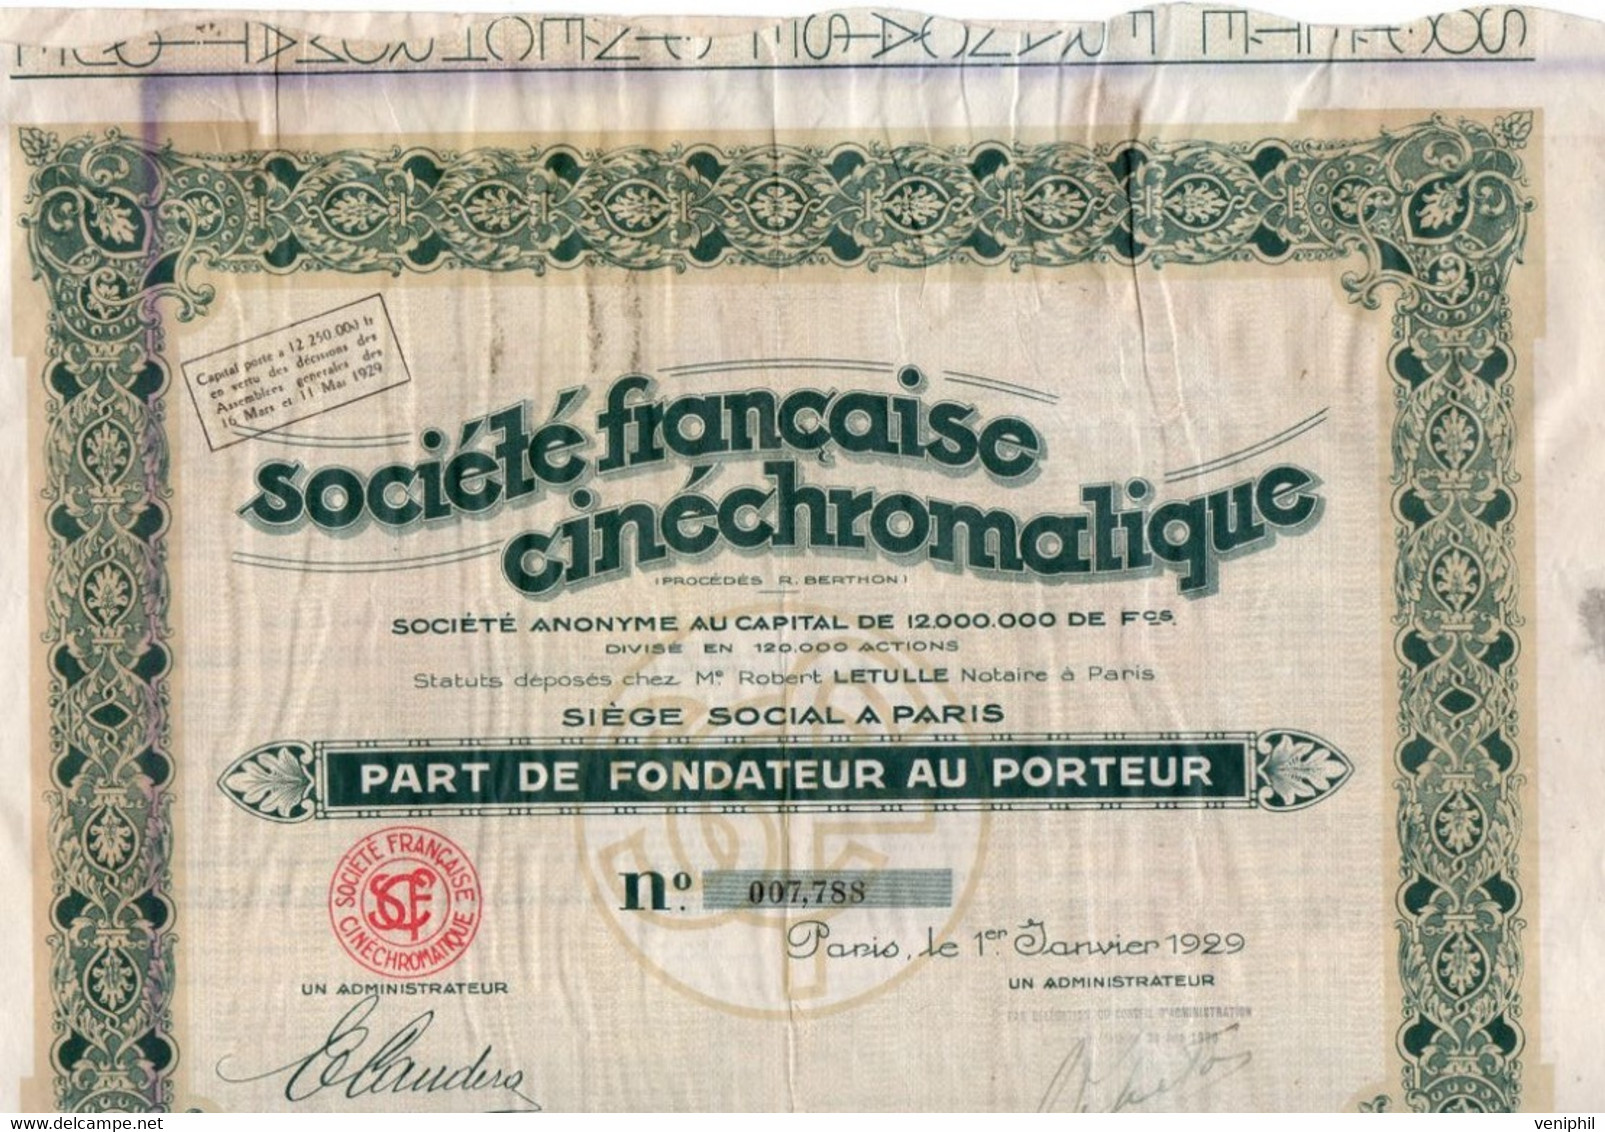 PART DE FONDATEUR -SOCIETE FRANCAISE CINECHROMATIQUE -ANNEE 1929 - Cine & Teatro